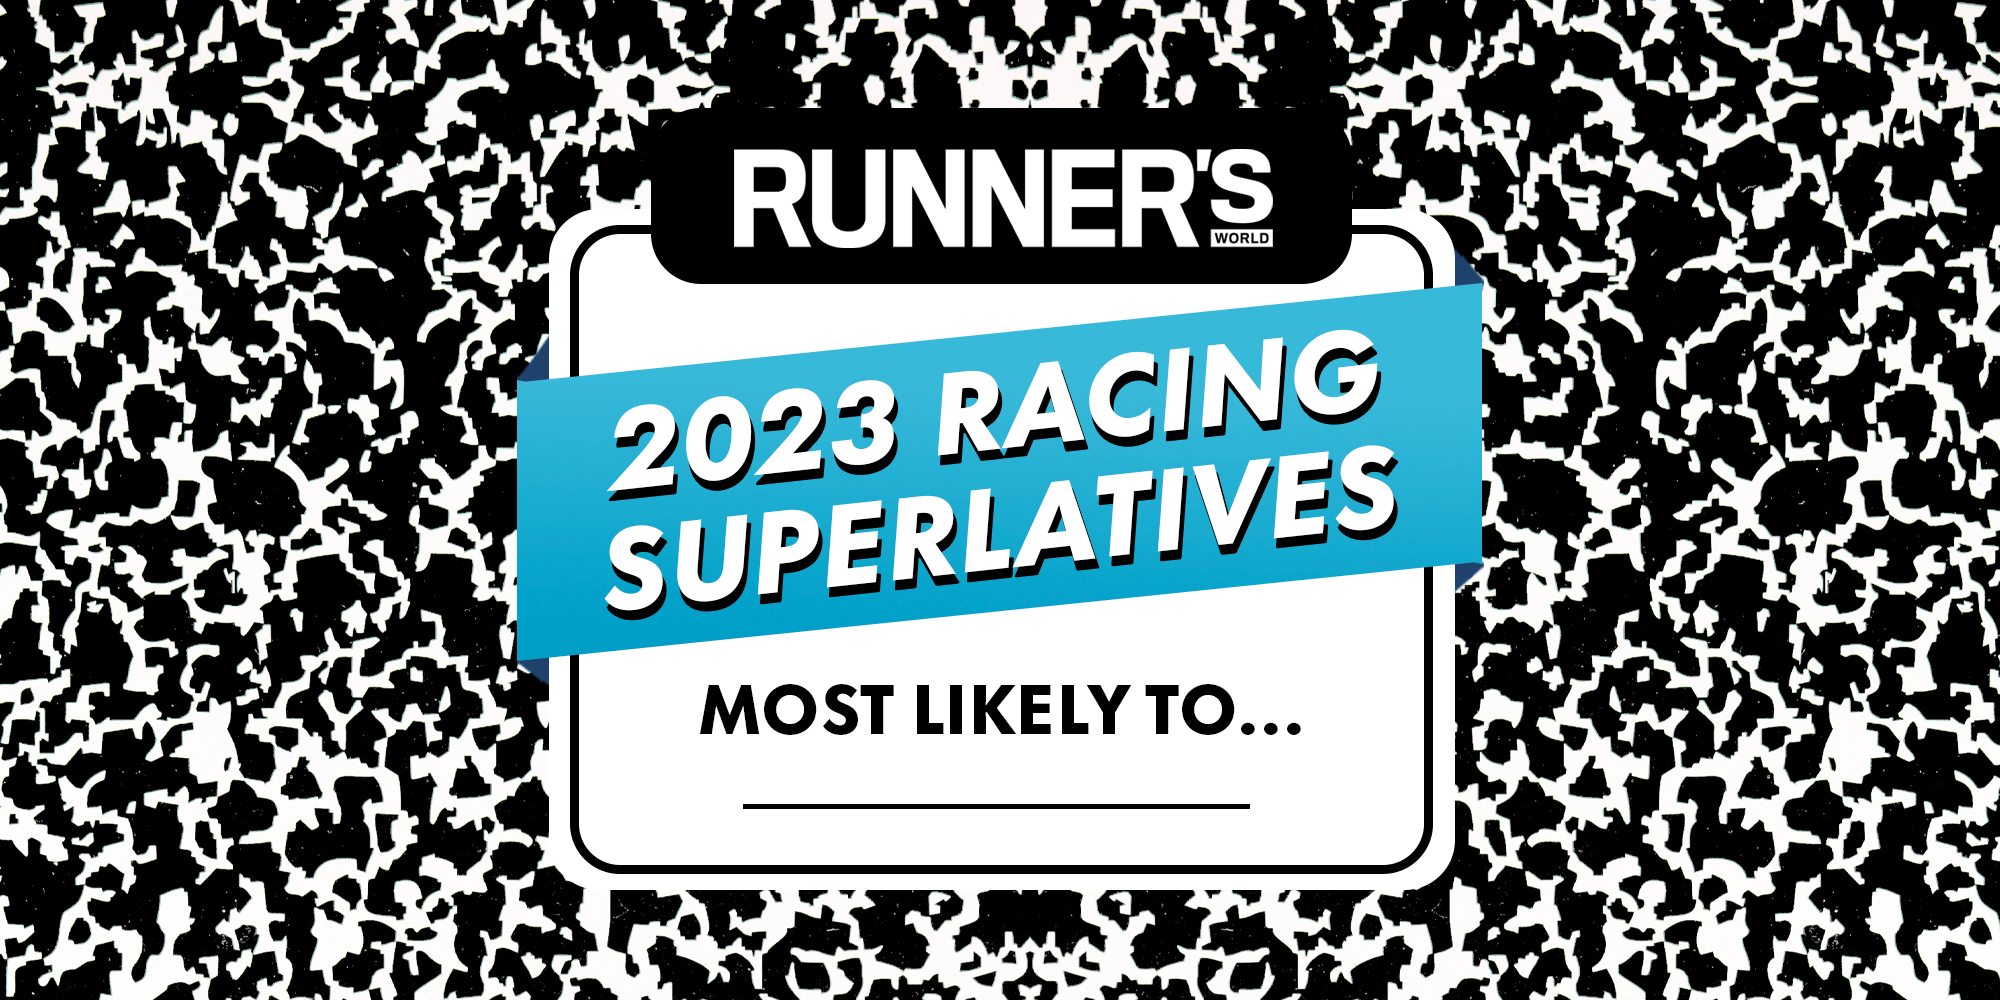 The Runner's World 2023 Superlatives